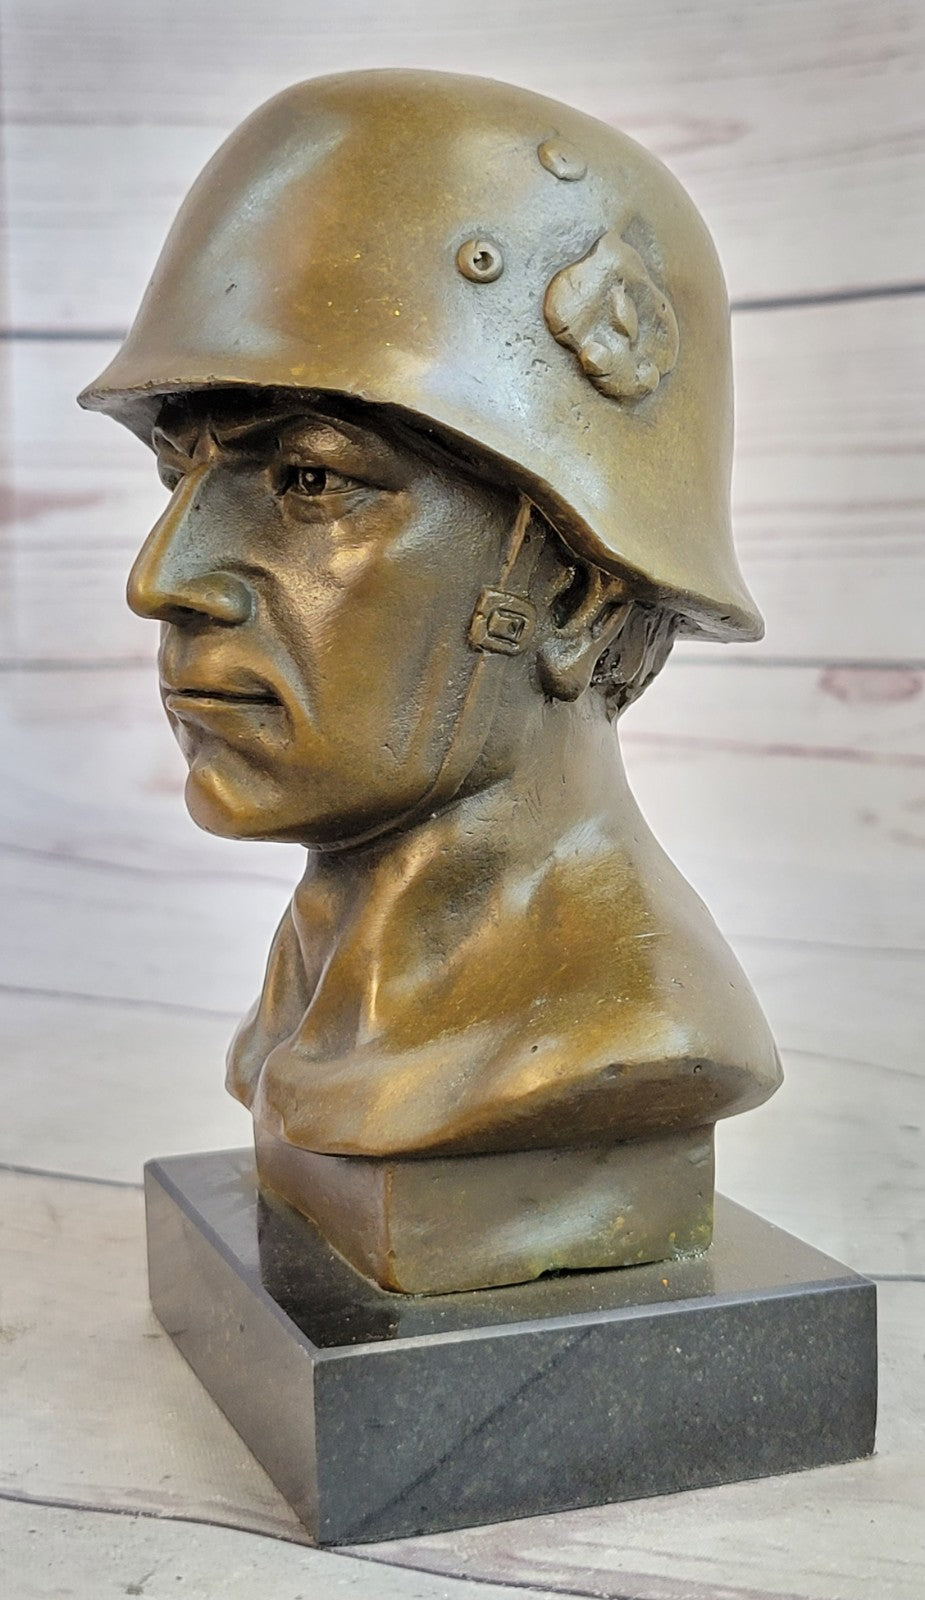 Handcrafted Original German Soldier Collector Memorabilia Bronze Sculpture Art